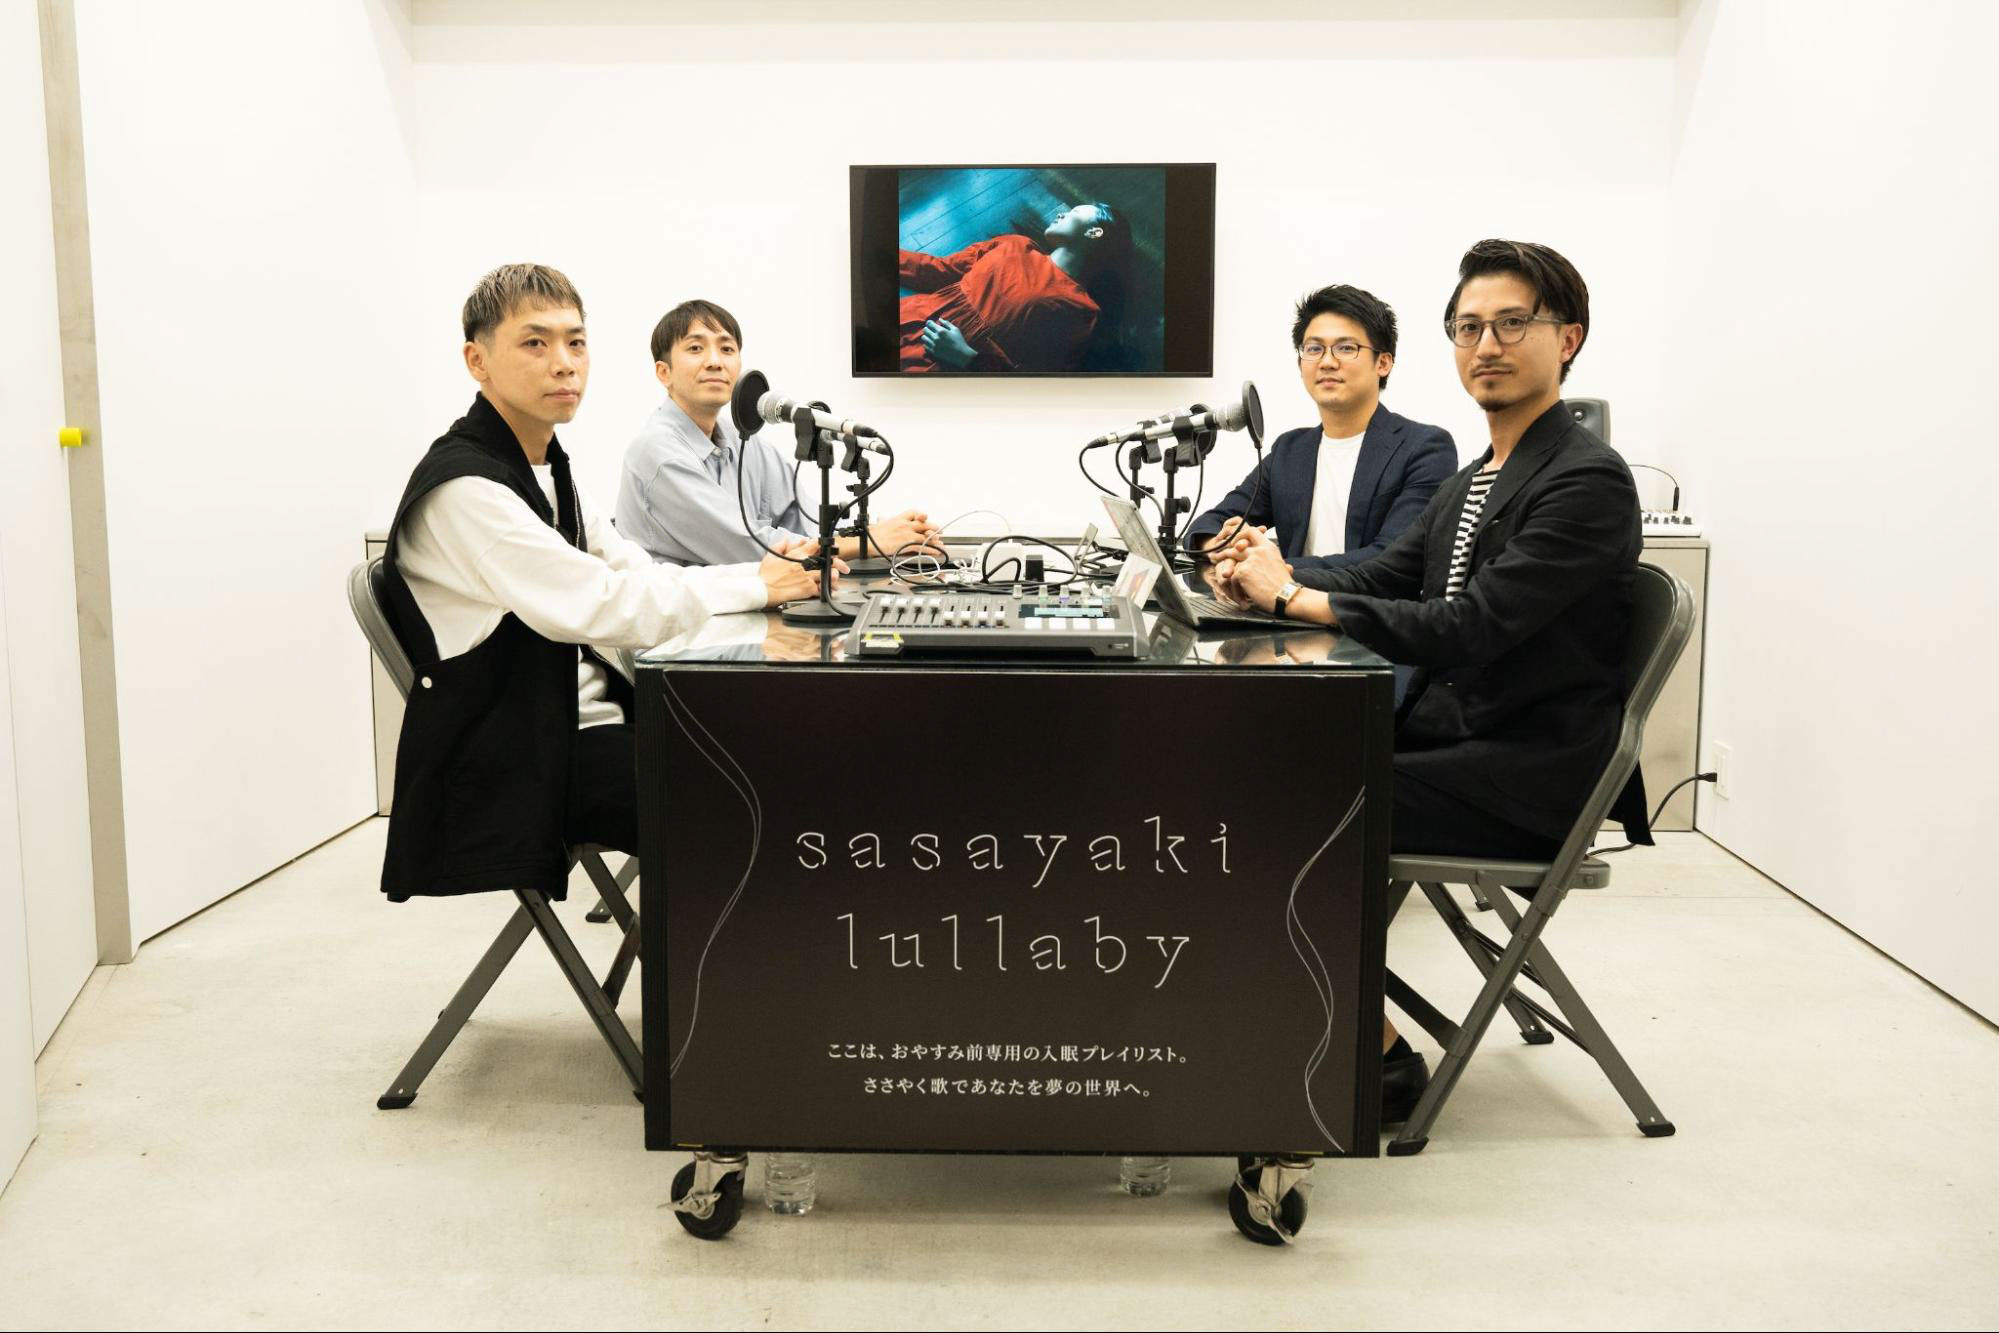 眠らない国・日本から拡がる“快眠の輪”─「sasayaki lullaby」が誘う“音楽×睡眠”の新たな可能性